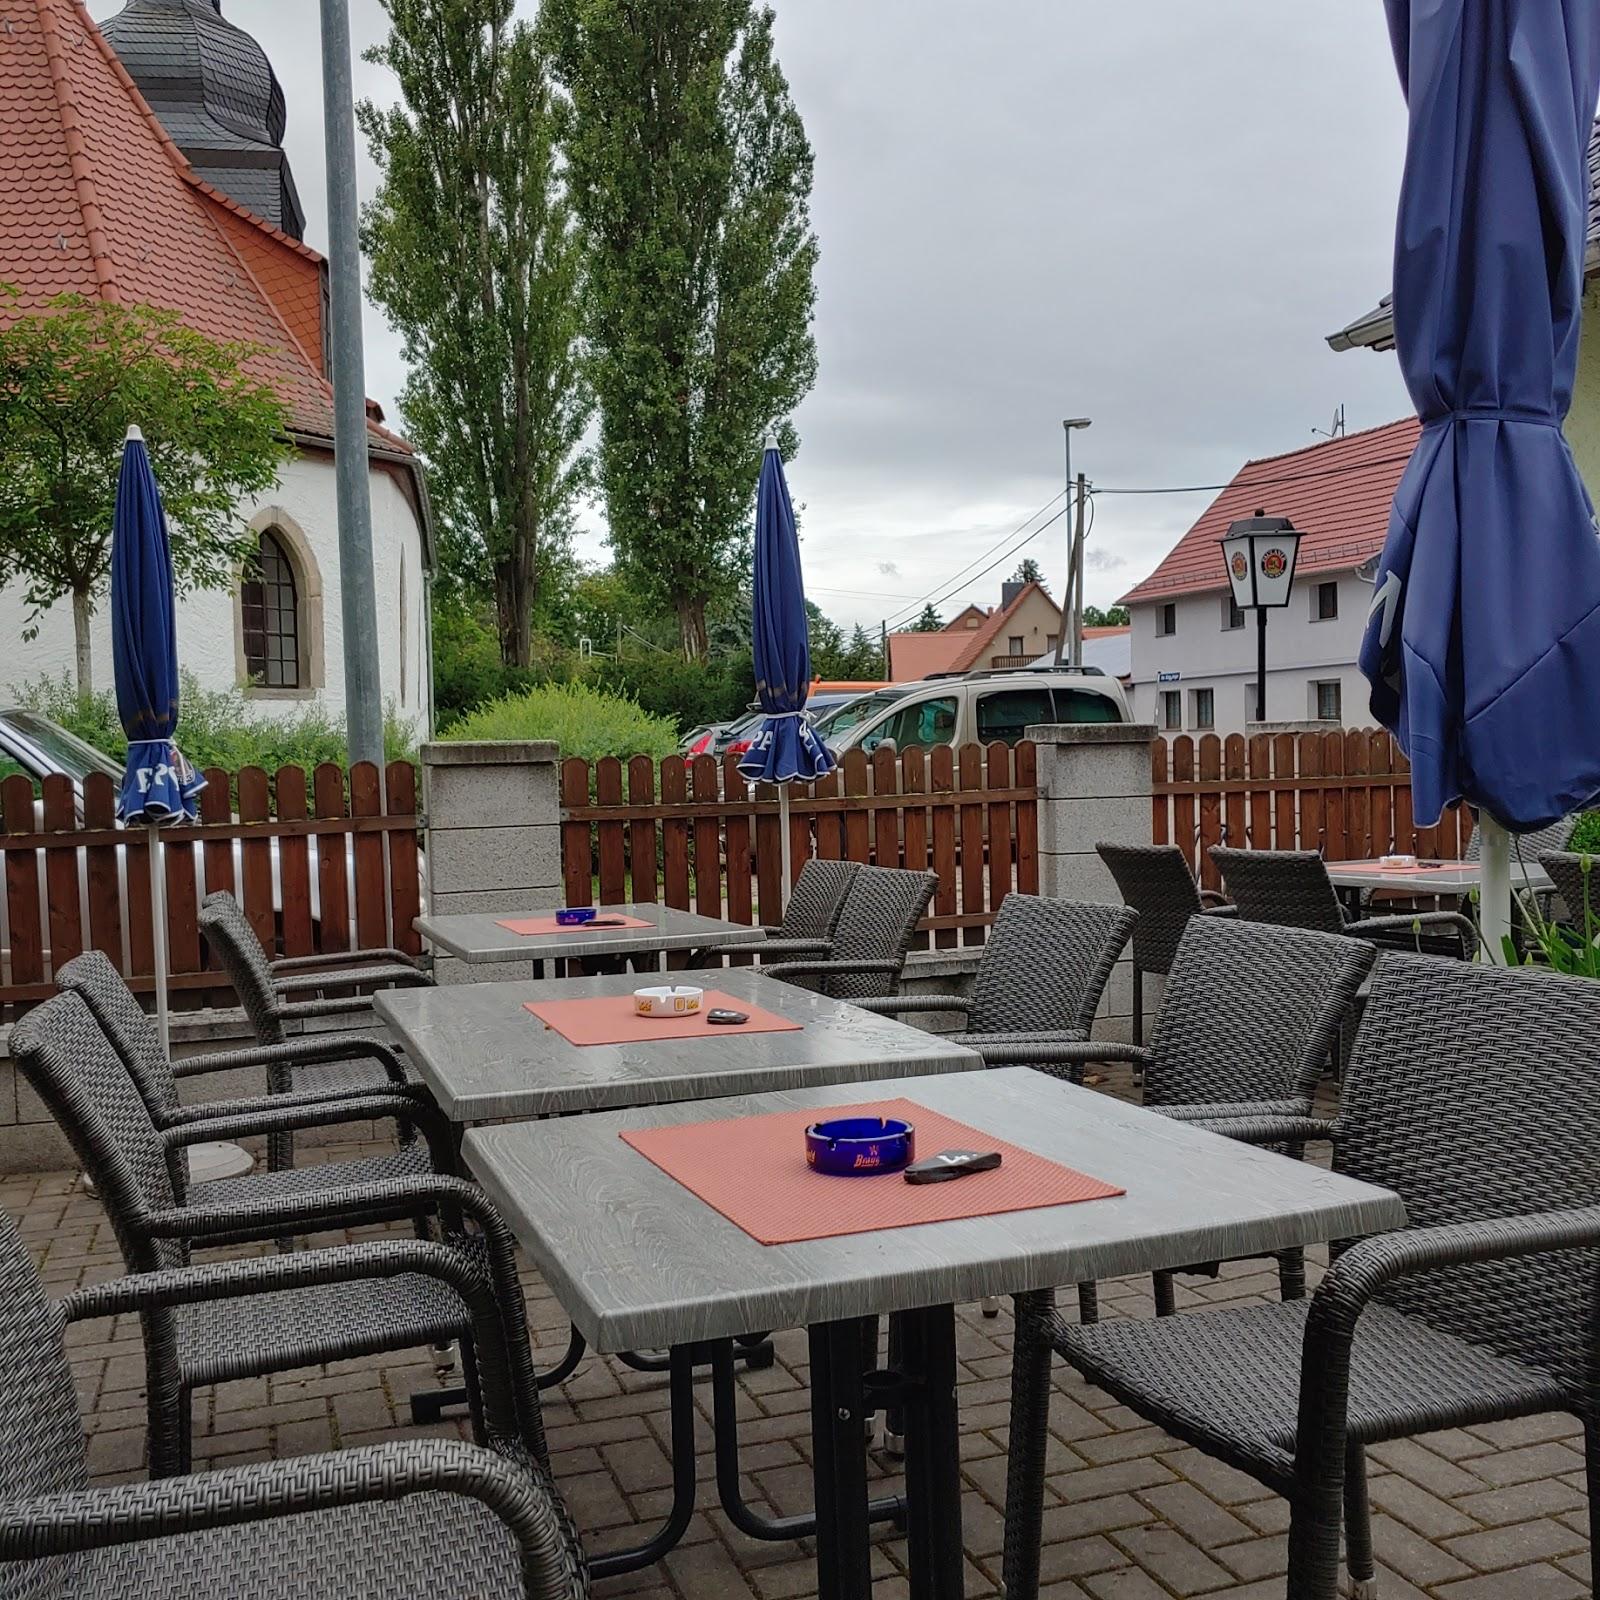 Restaurant "Gasthaus Anger2" in Erfurt